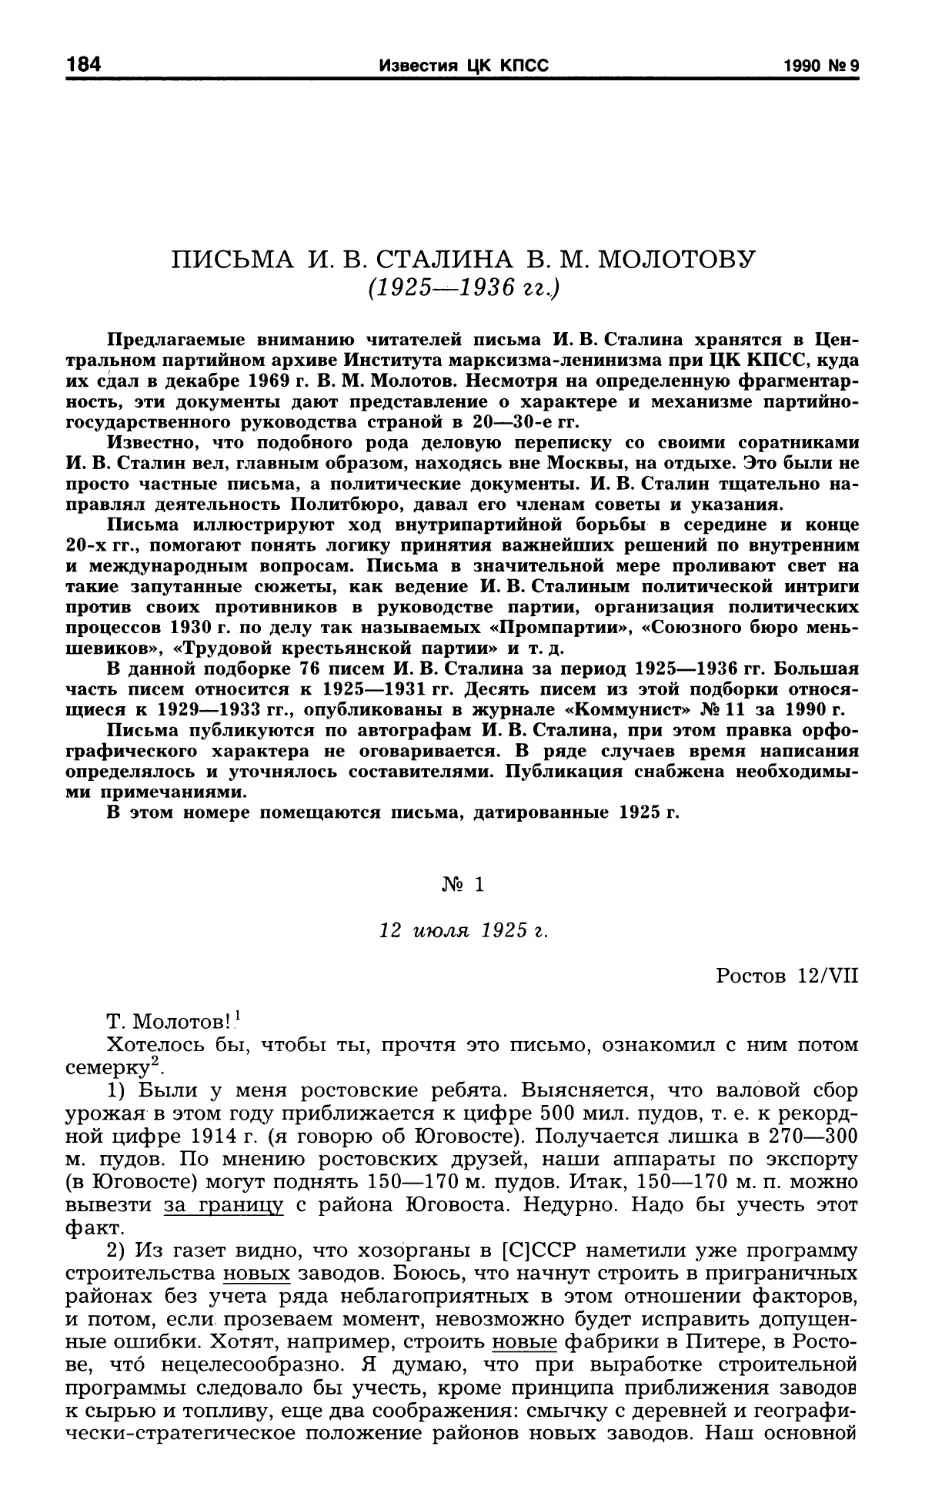 Письма И. В. Сталина В. М. Молотову. 1925 г